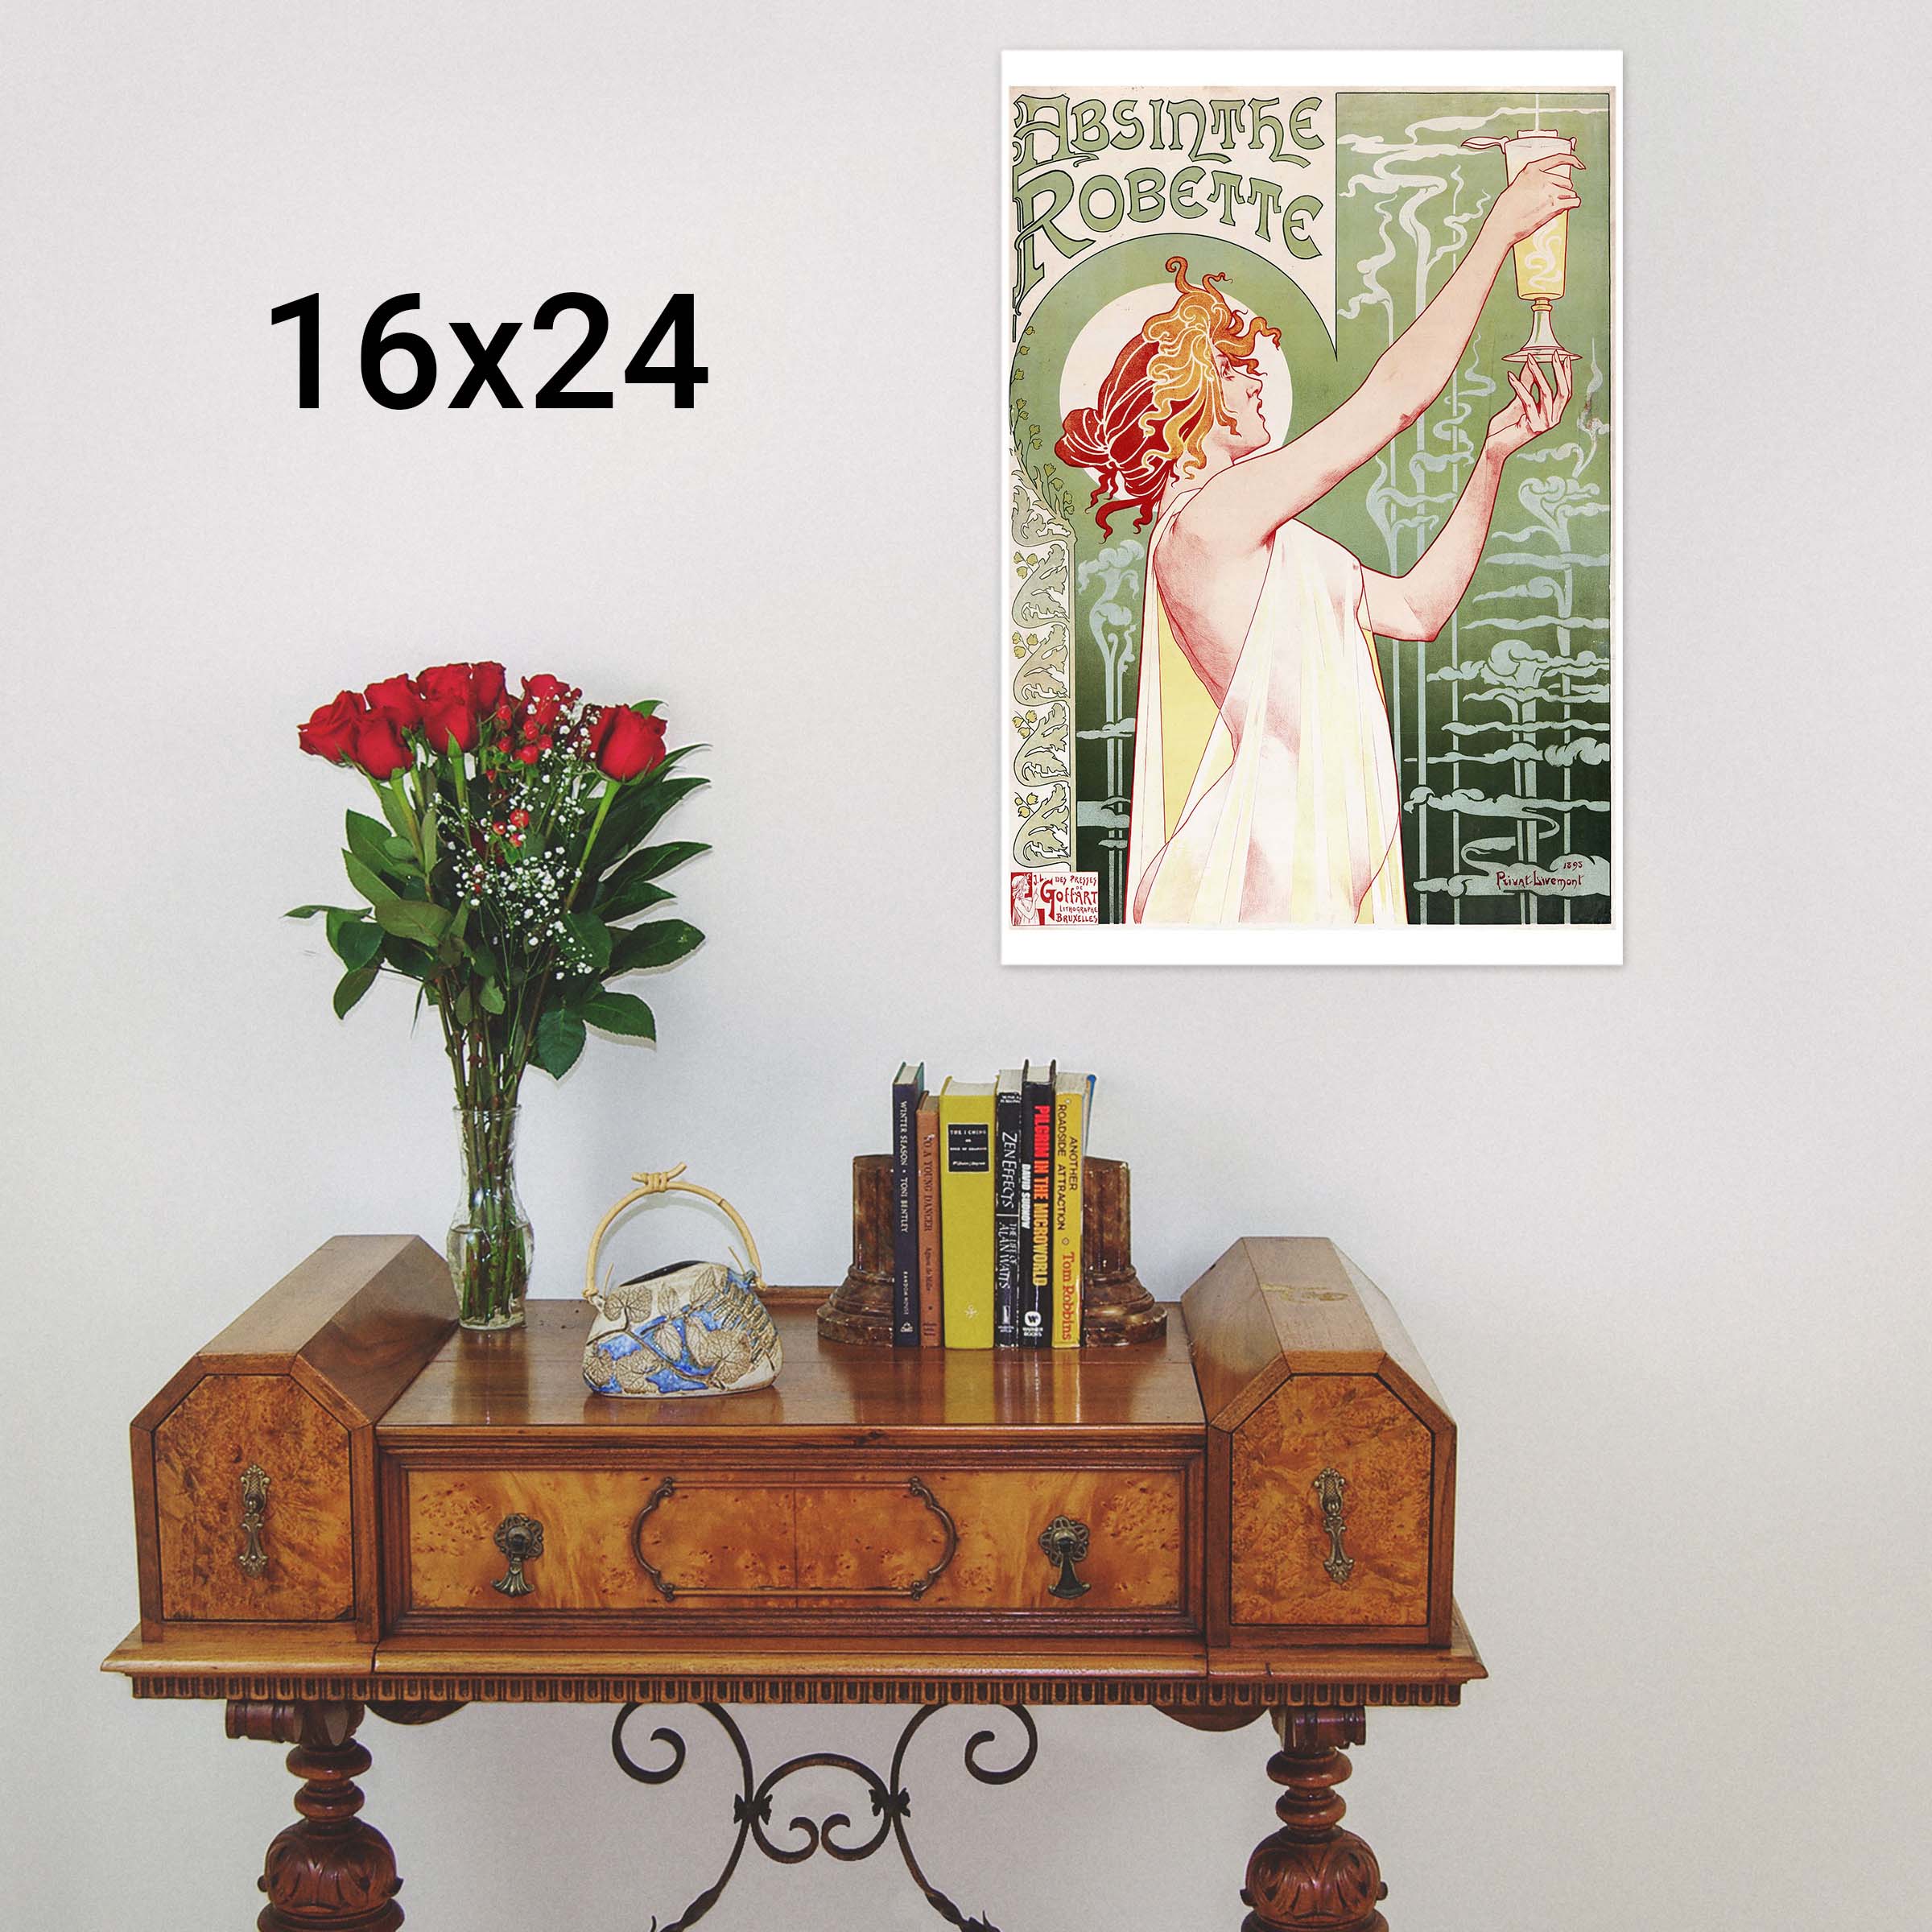 Absinthe Robette Henri Privat Livemont Jugendstil Werbeplakat Plakate A1 391 